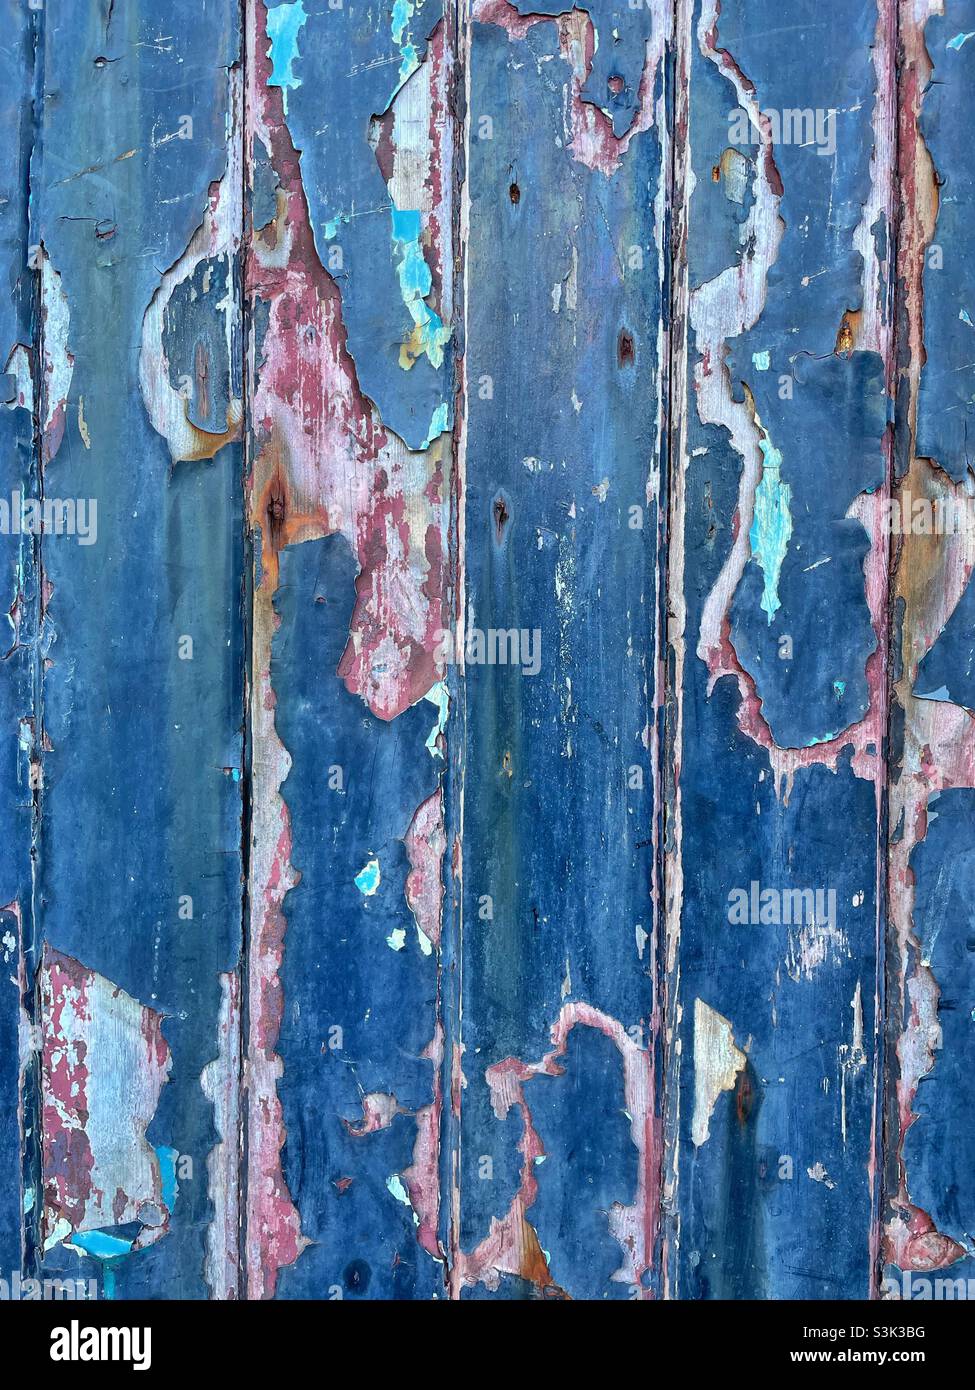 Die abblätternde blaue Farbe an einer alten Holztür zeigt ältere Farbschichten darunter. Stockfoto